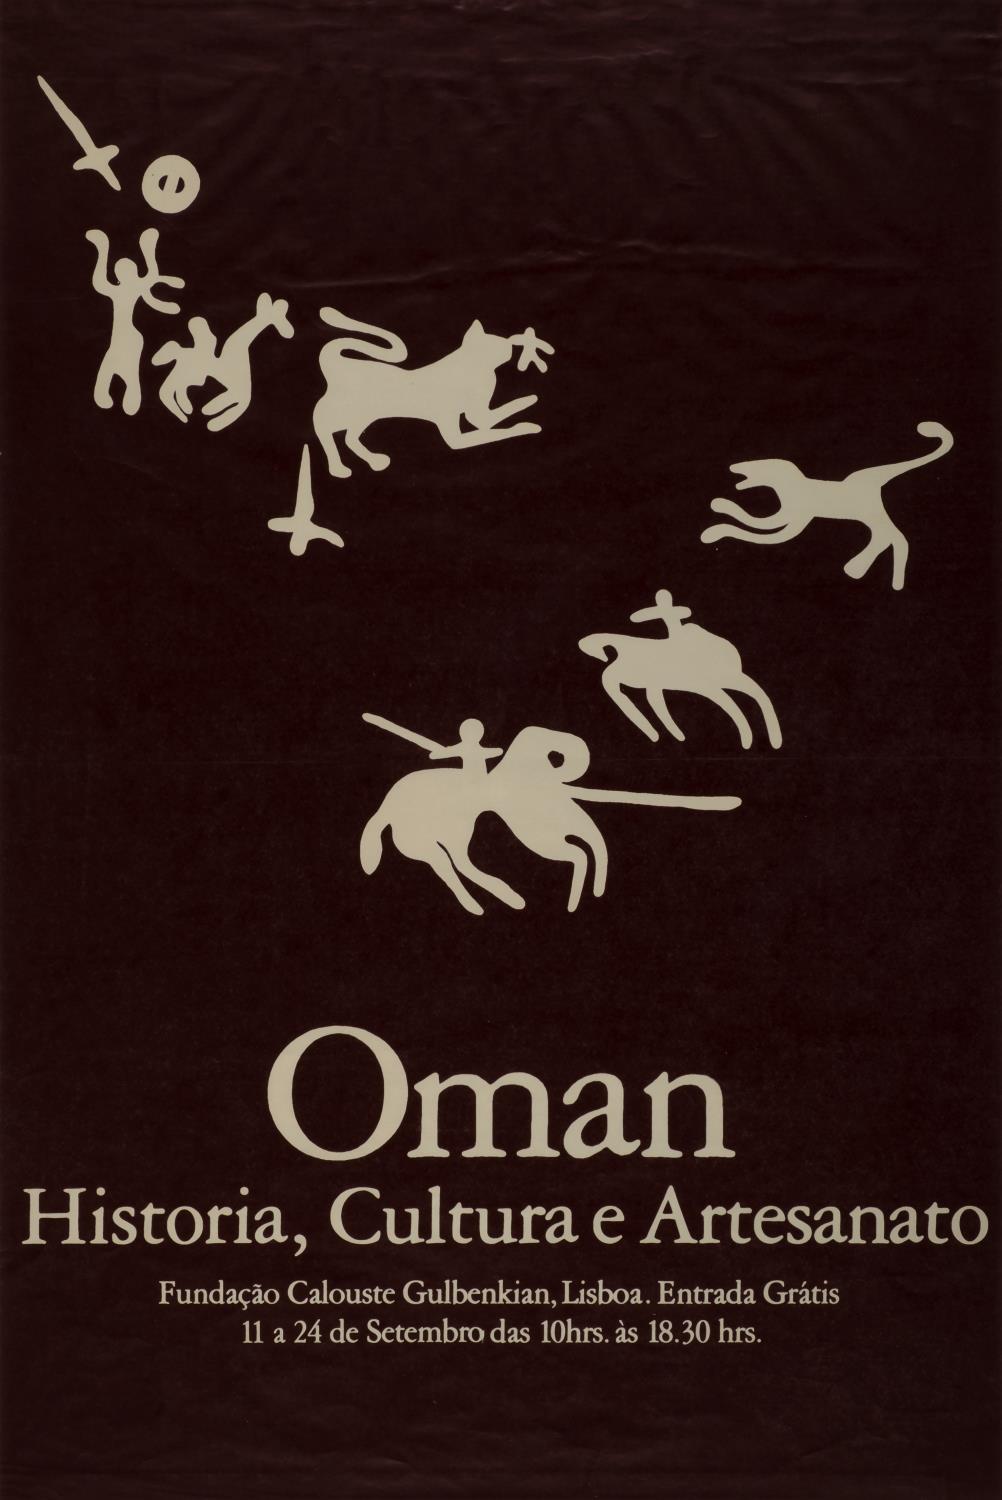 Omã. História, Cultura e Artes Tradicionais